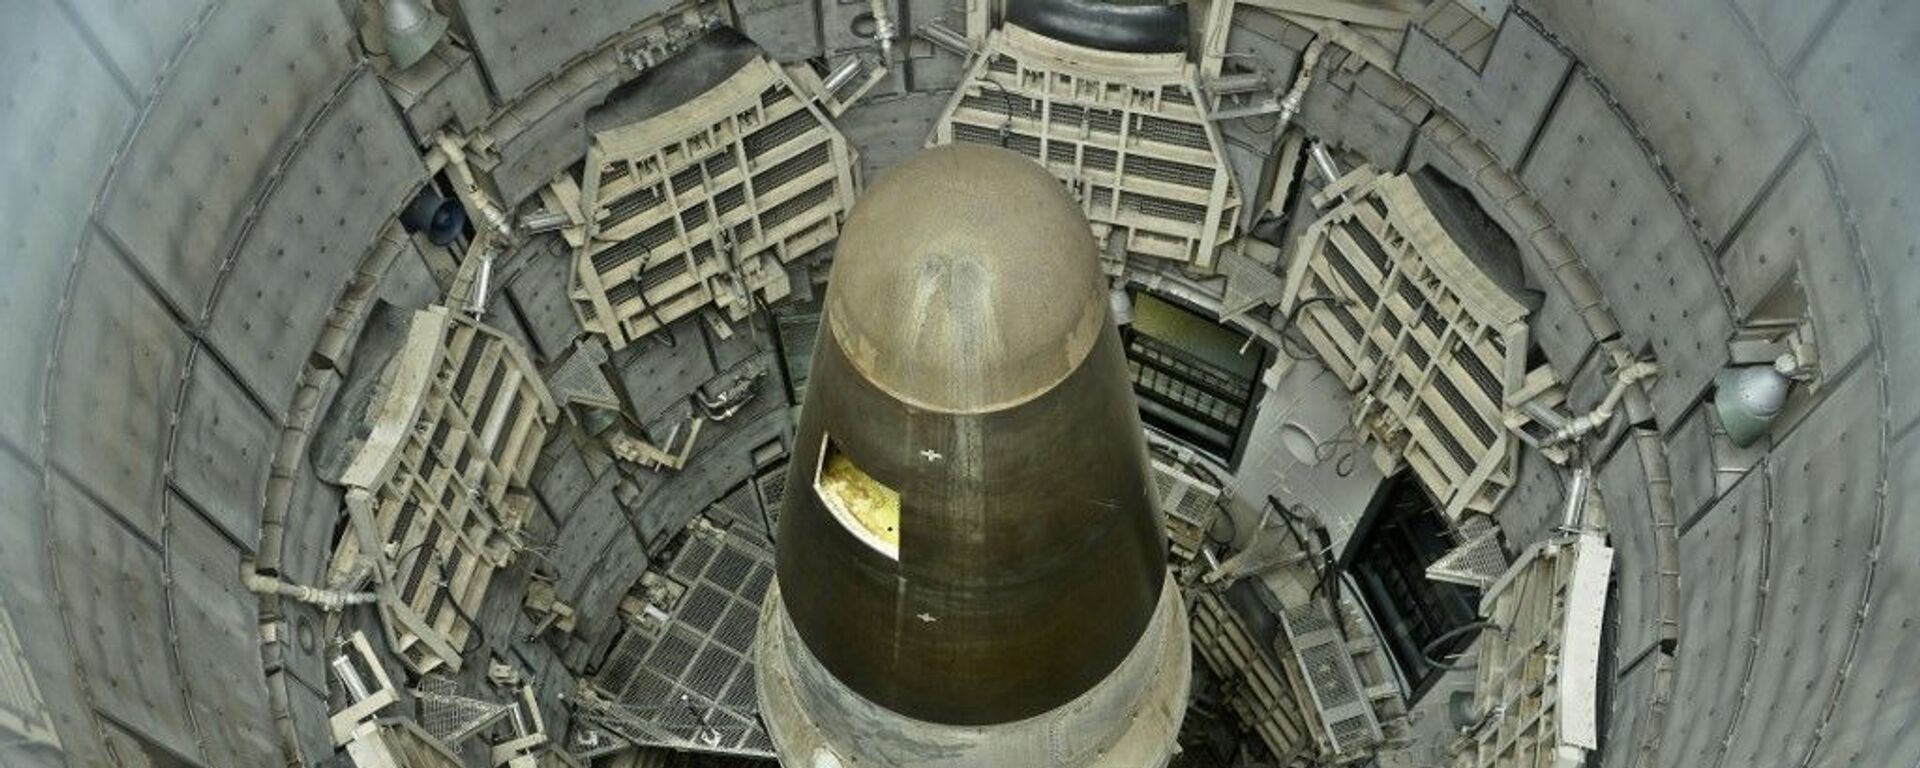 Míssil balístico intercontinental (ICBM, na sigla em inglês) nuclear Titan II desativado em silo no estado do Arizona, nos EUA (foto de arquivo) - Sputnik Brasil, 1920, 25.05.2023